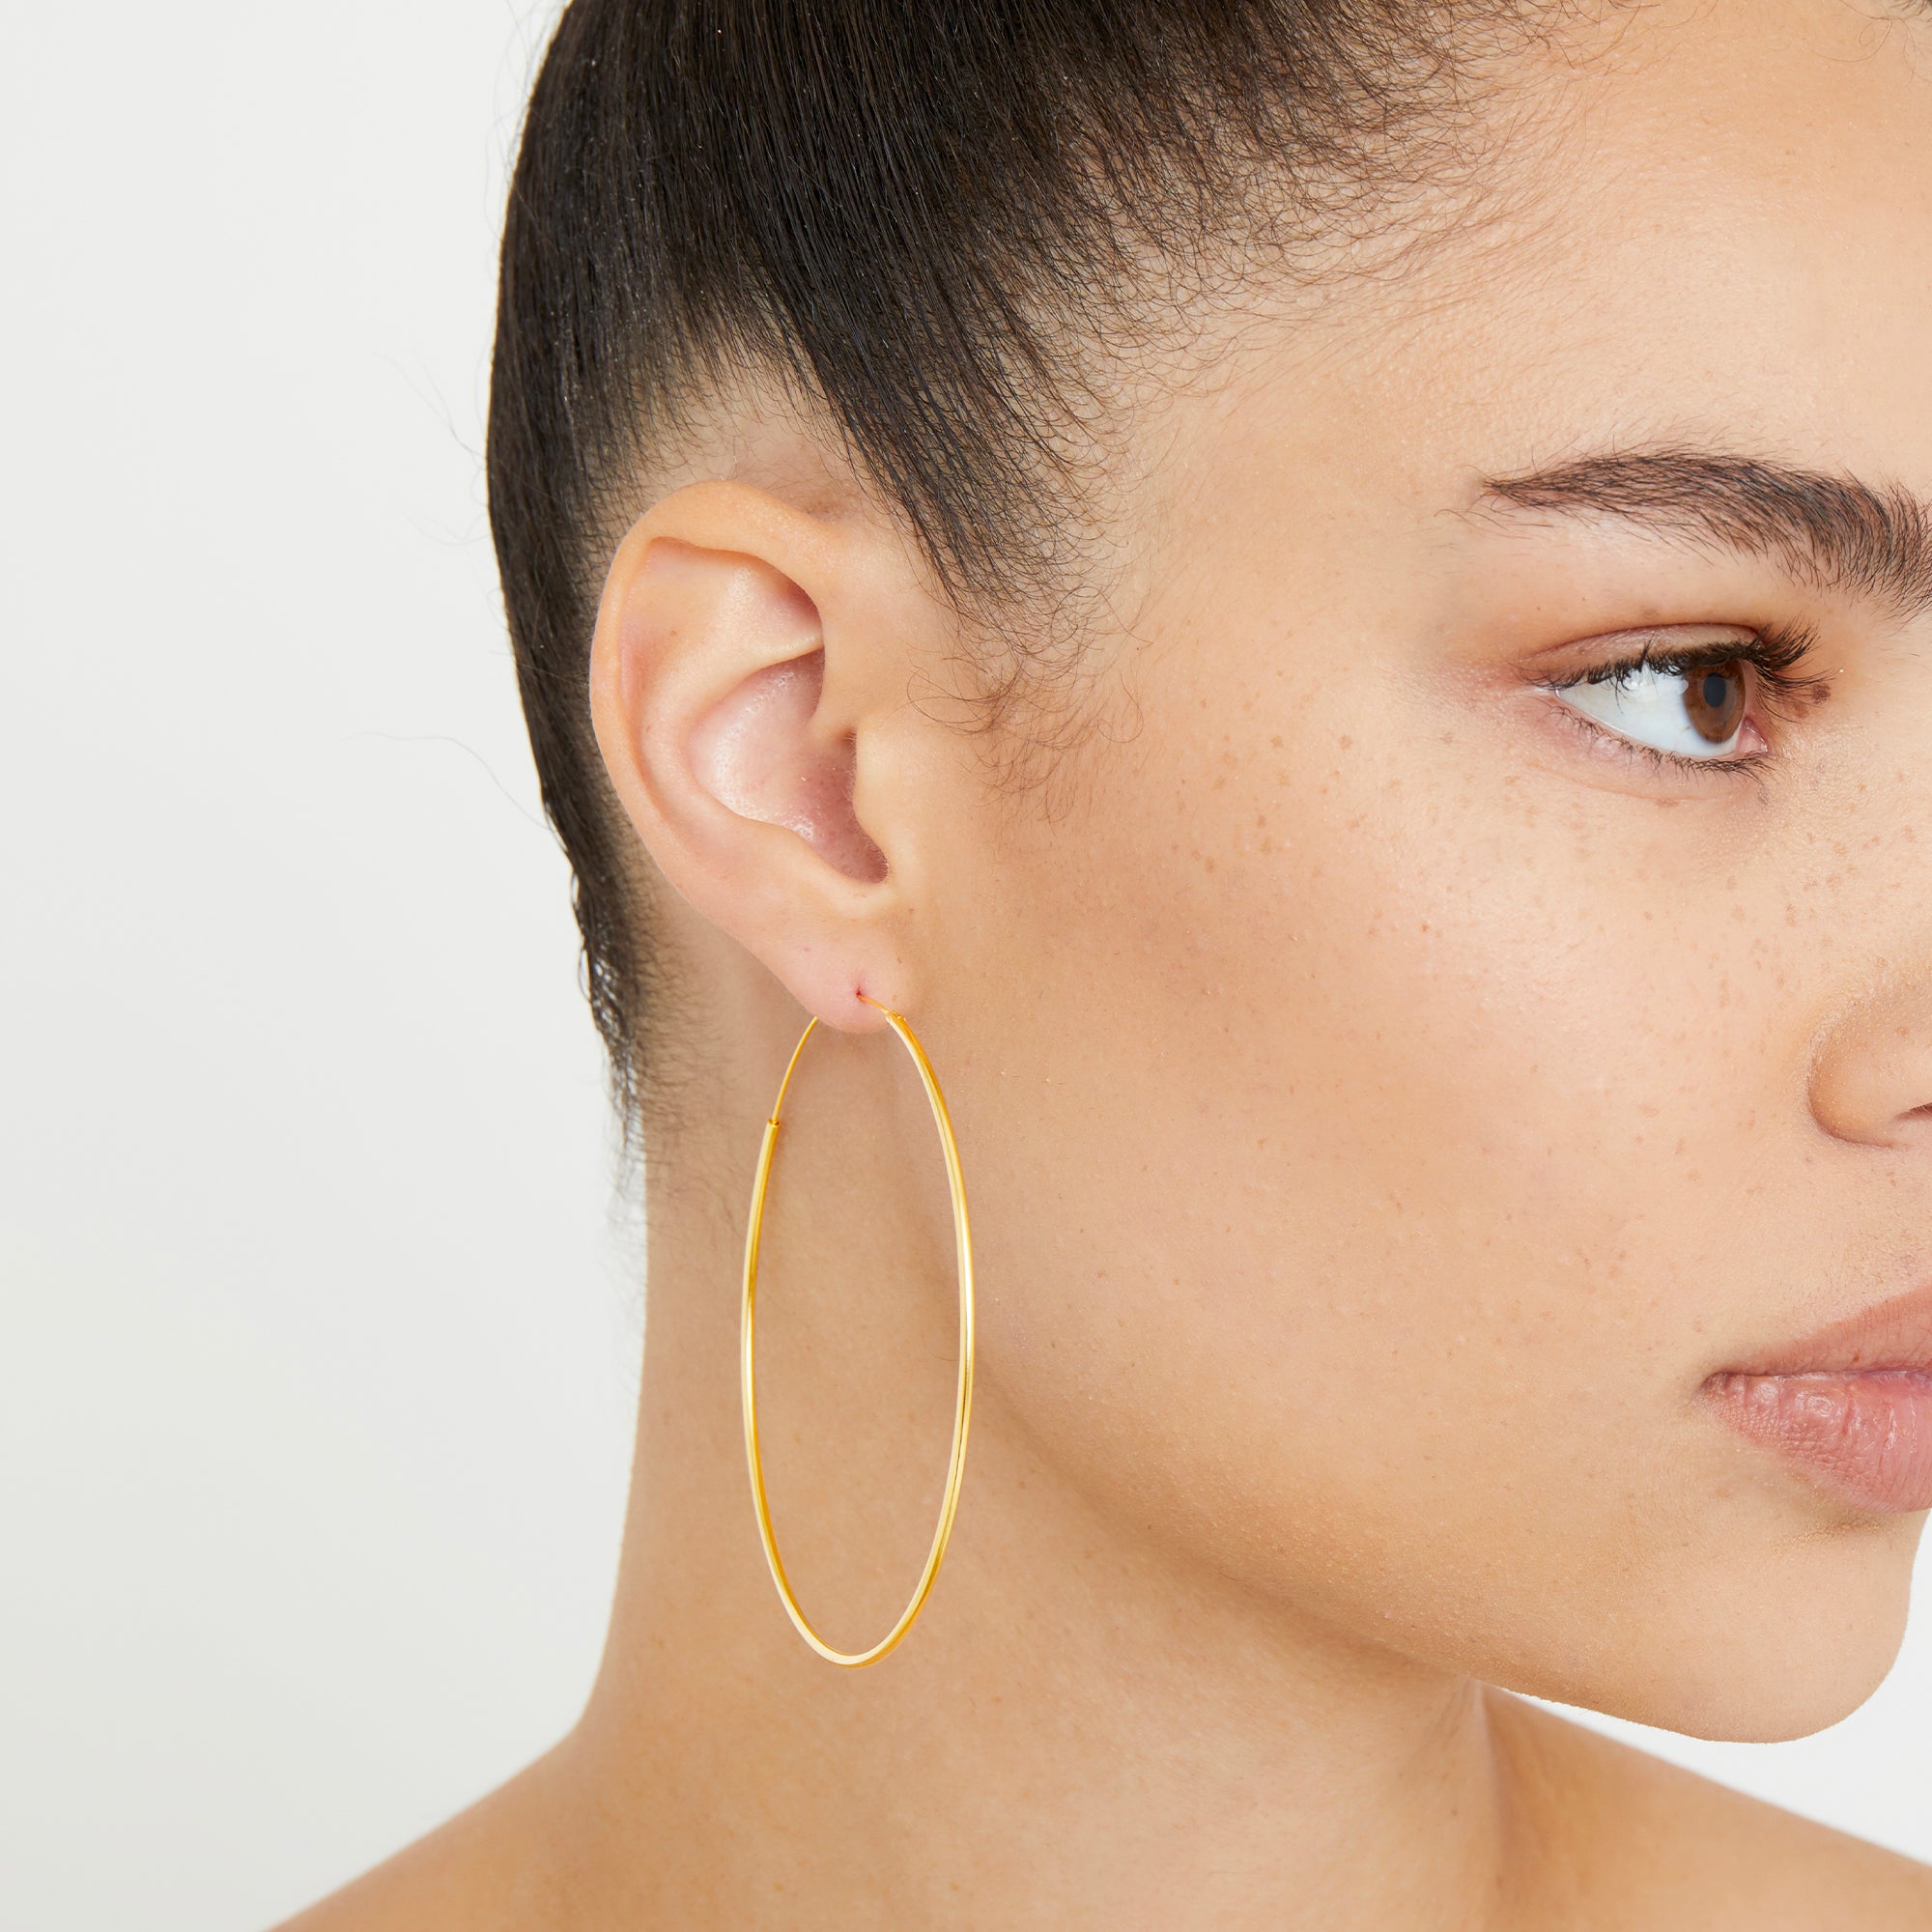 Large Thin Hoop Earrings in Gold Sterling Silver  Lisa Angel